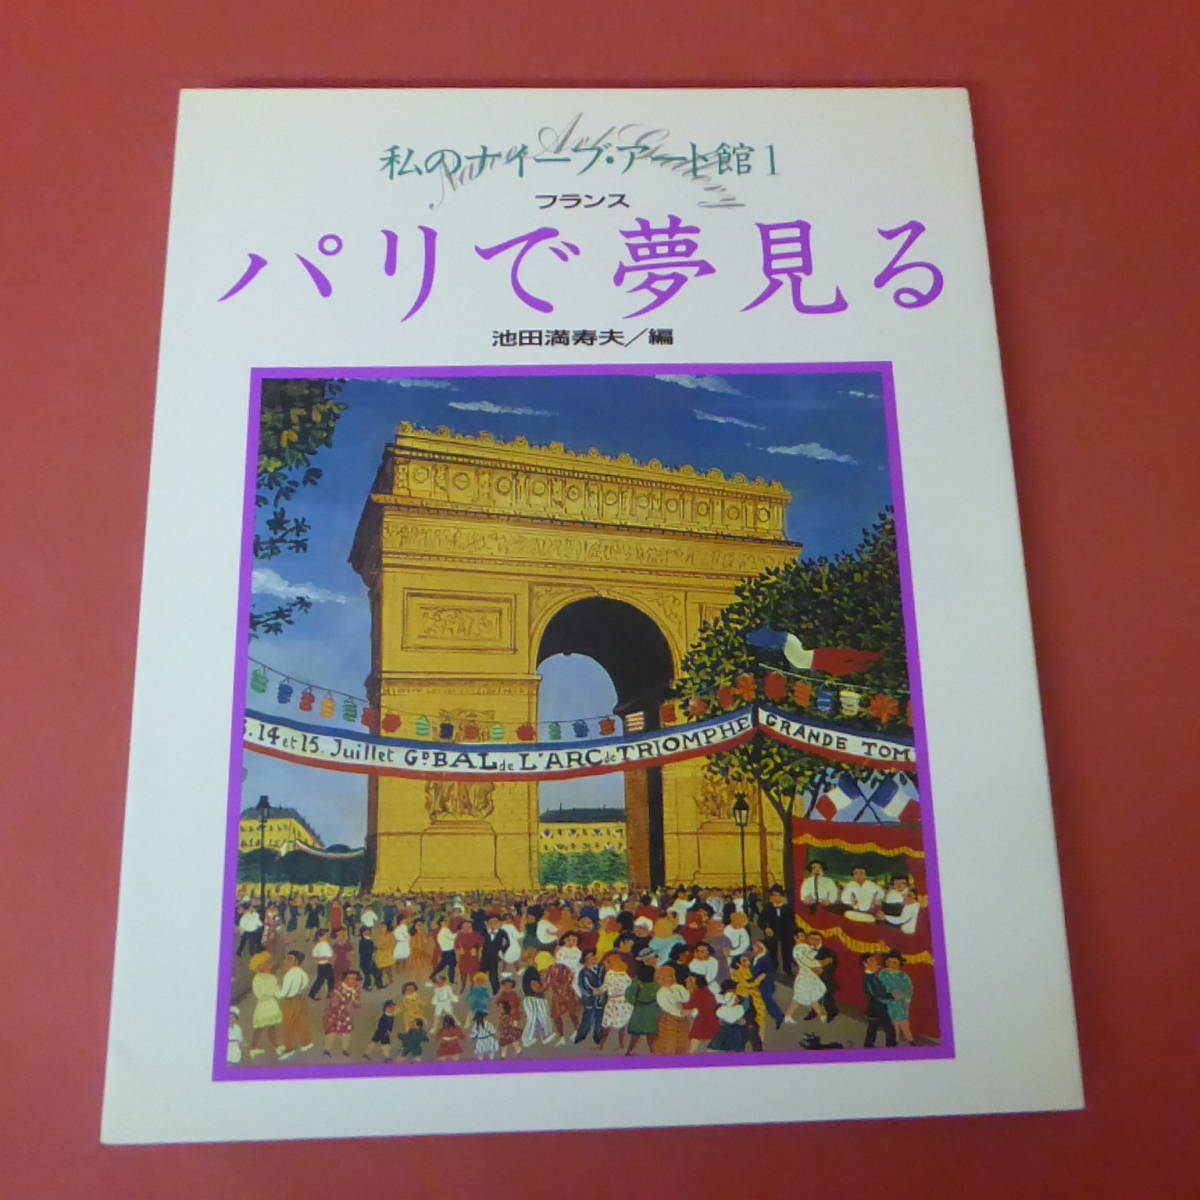 YN2-231208☆Mi Museo de Arte Naif 1 Soñando en París Francia, Masuo Ikeda/Editor, Cuadro, Libro de arte, Recopilación, Libro de arte